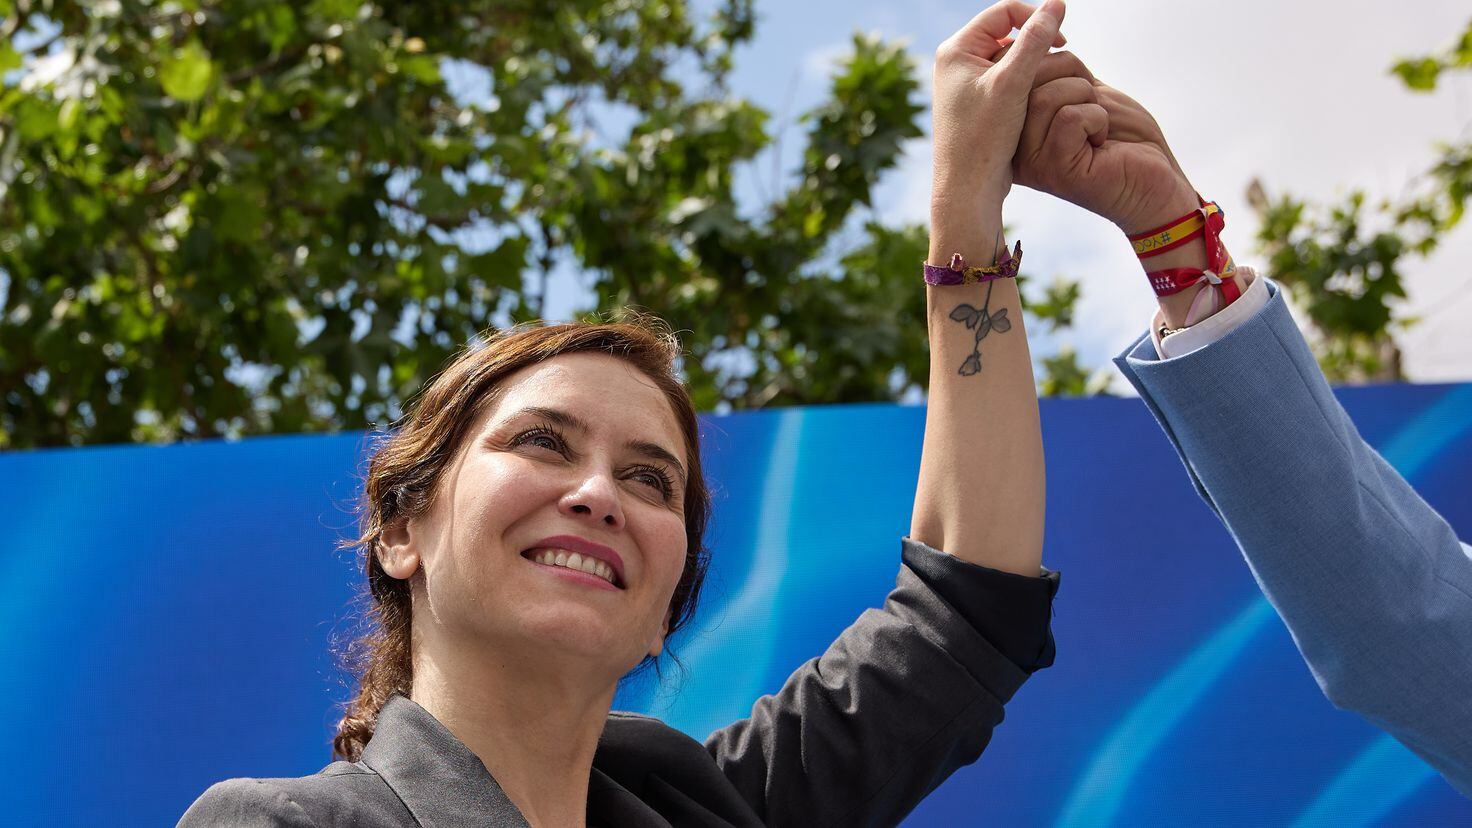 Il significato del tatuaggio che Isabel Díaz Ayuso ha sul braccio